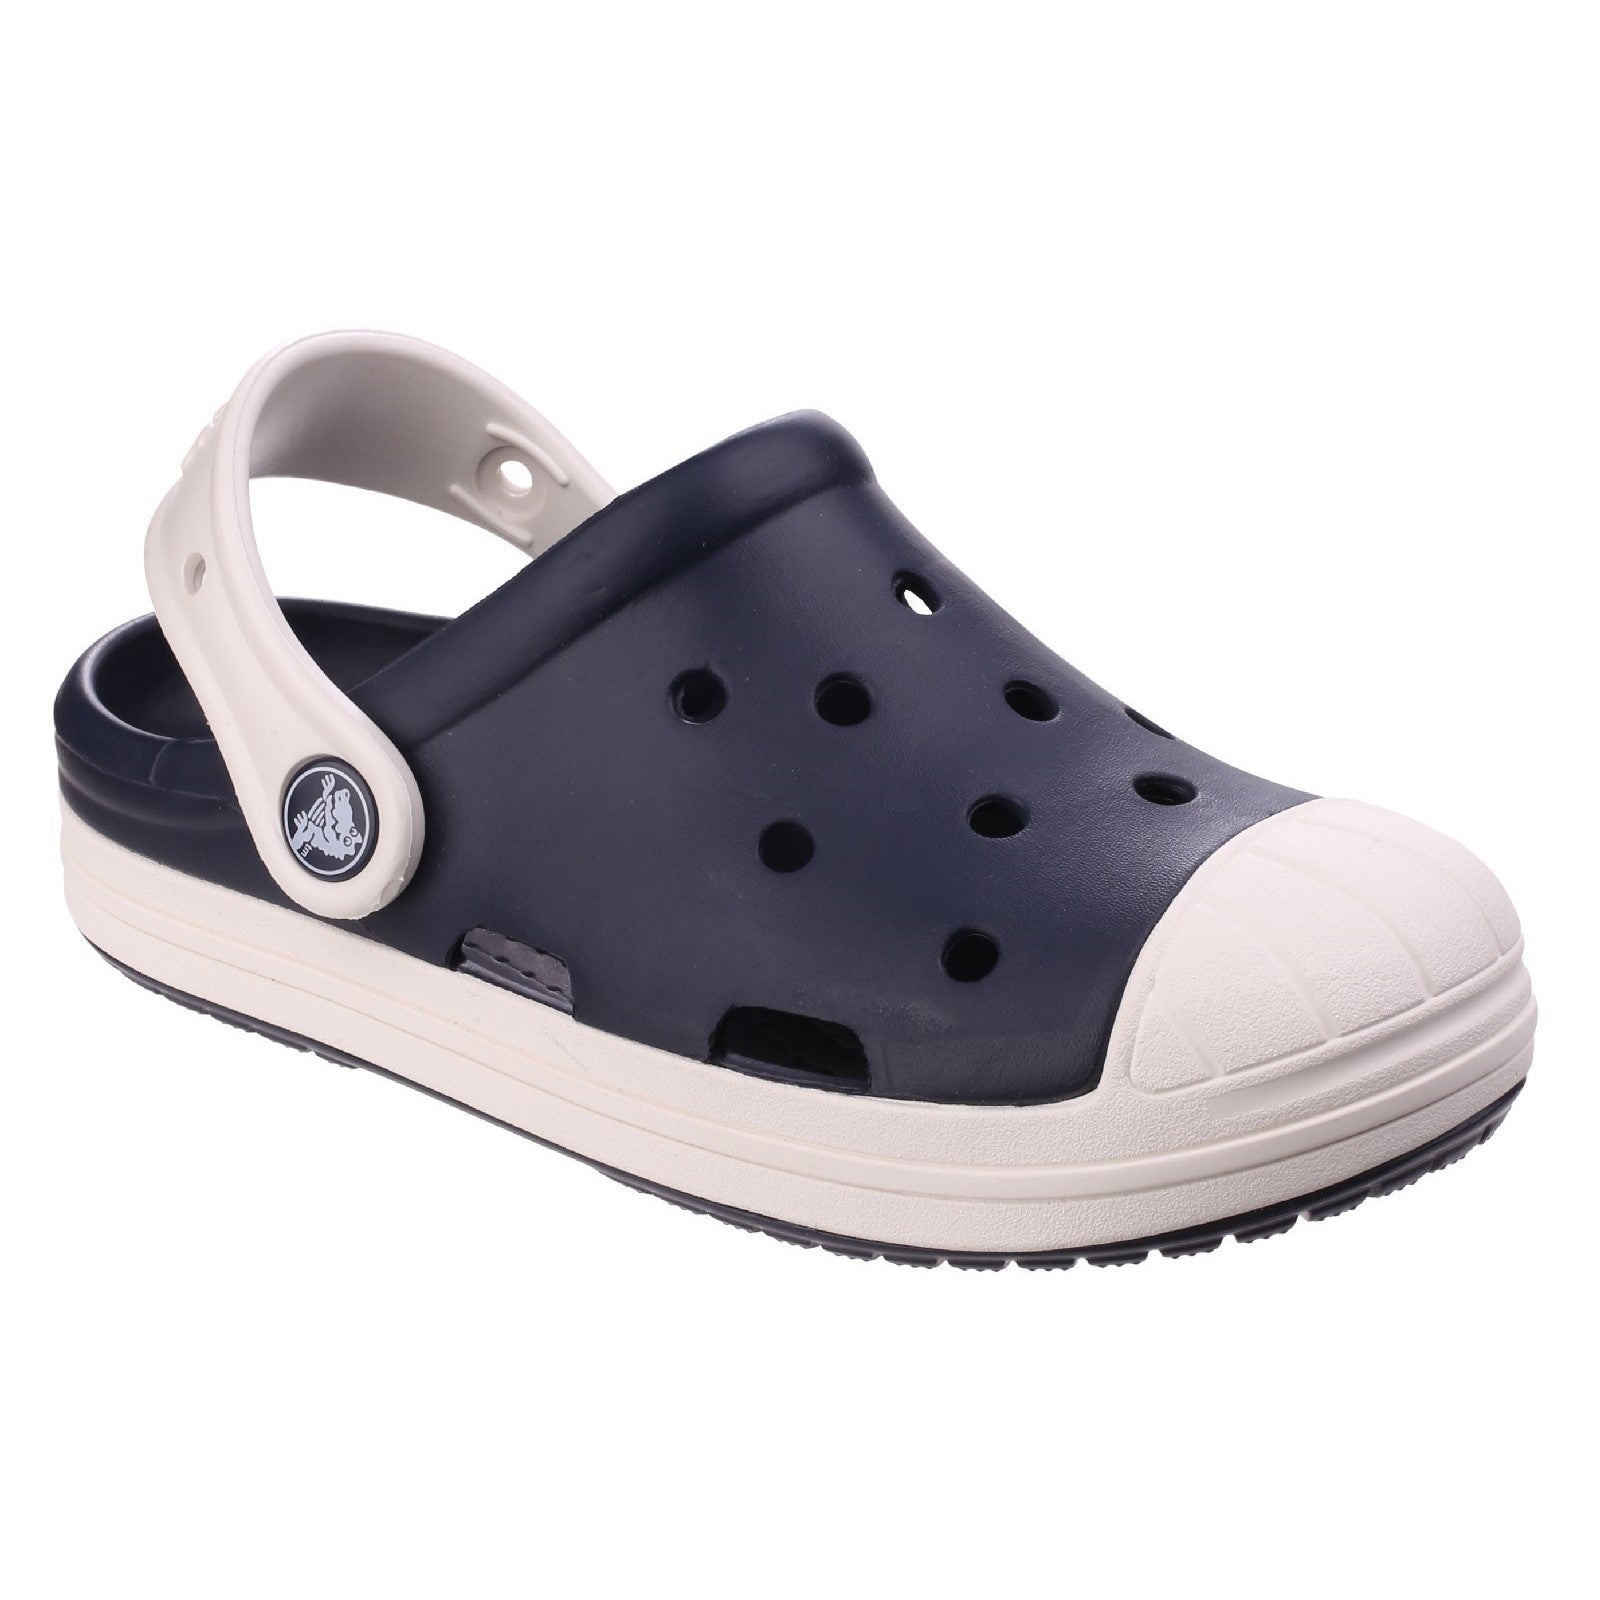 Crocs Bump It Clog Sandals